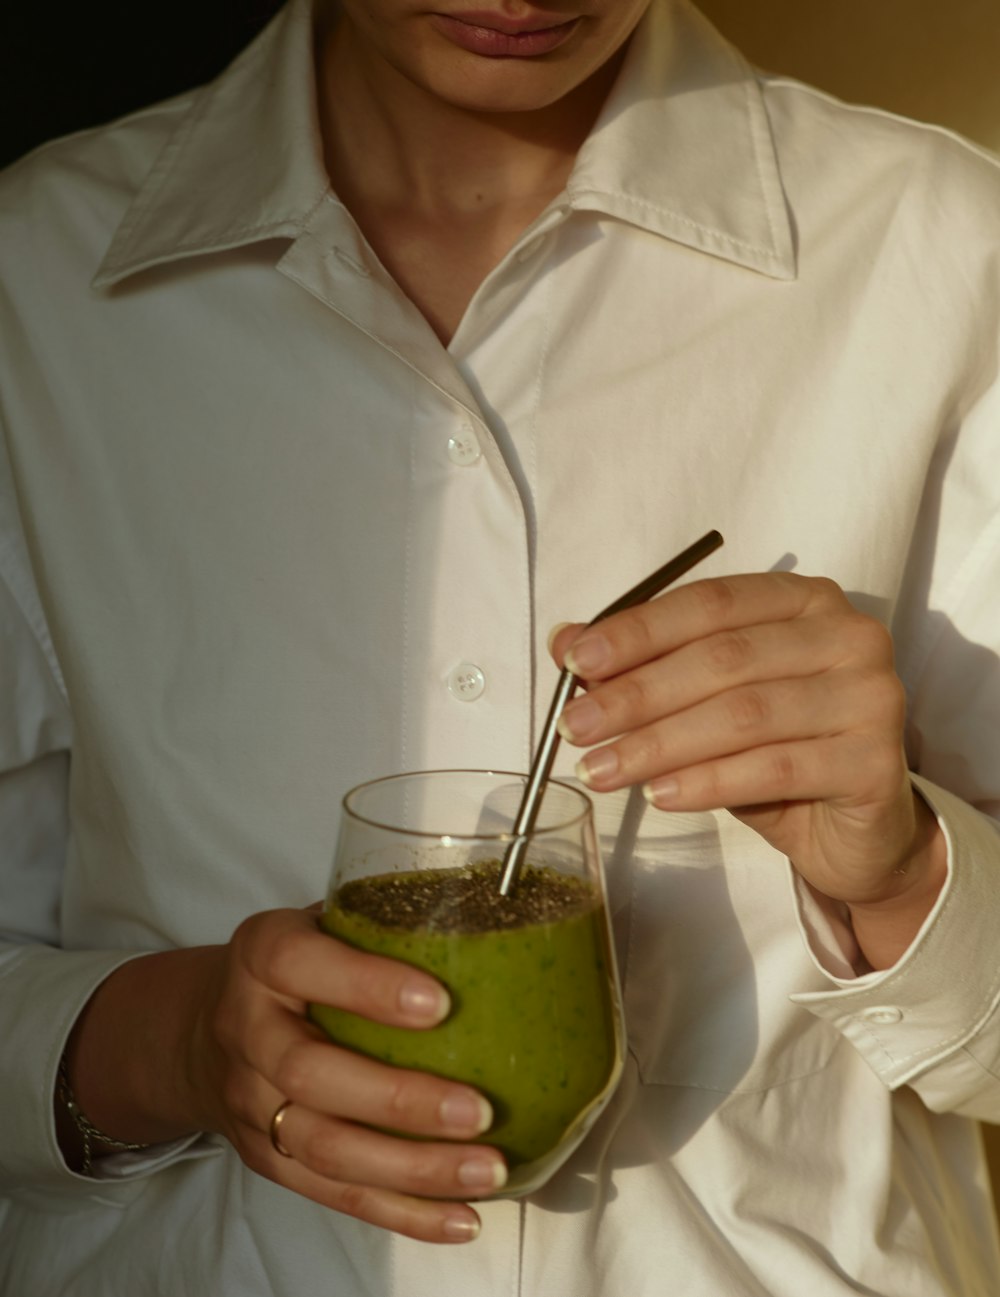 pessoa no botão branco para cima camisa segurando vidro de beber transparente com líquido verde